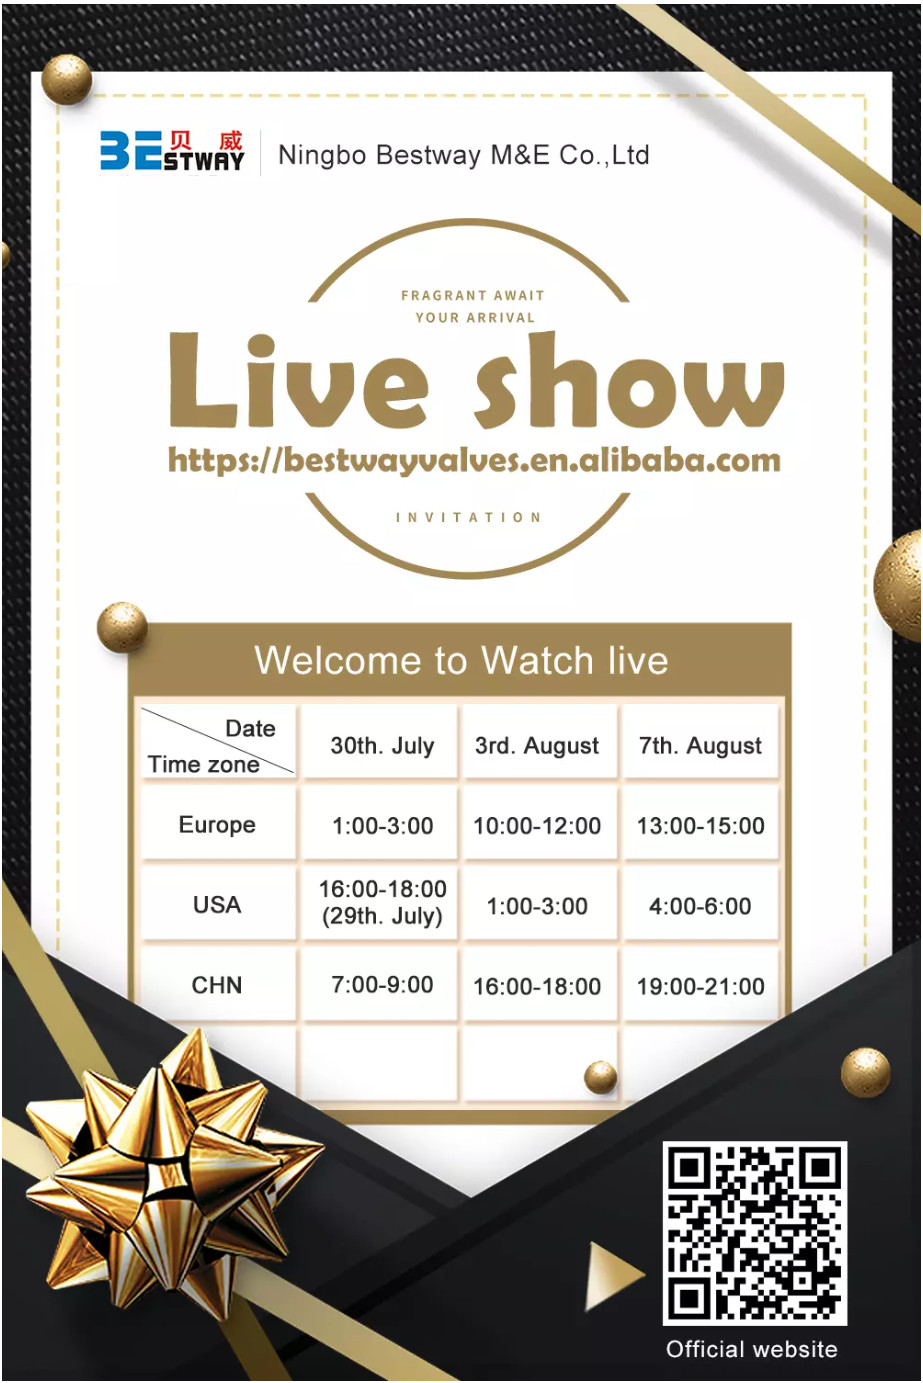 നിങ്ബോ ബെസ്റ്റ്വേ എം&ഇ കോ., Ltd Live Show-News